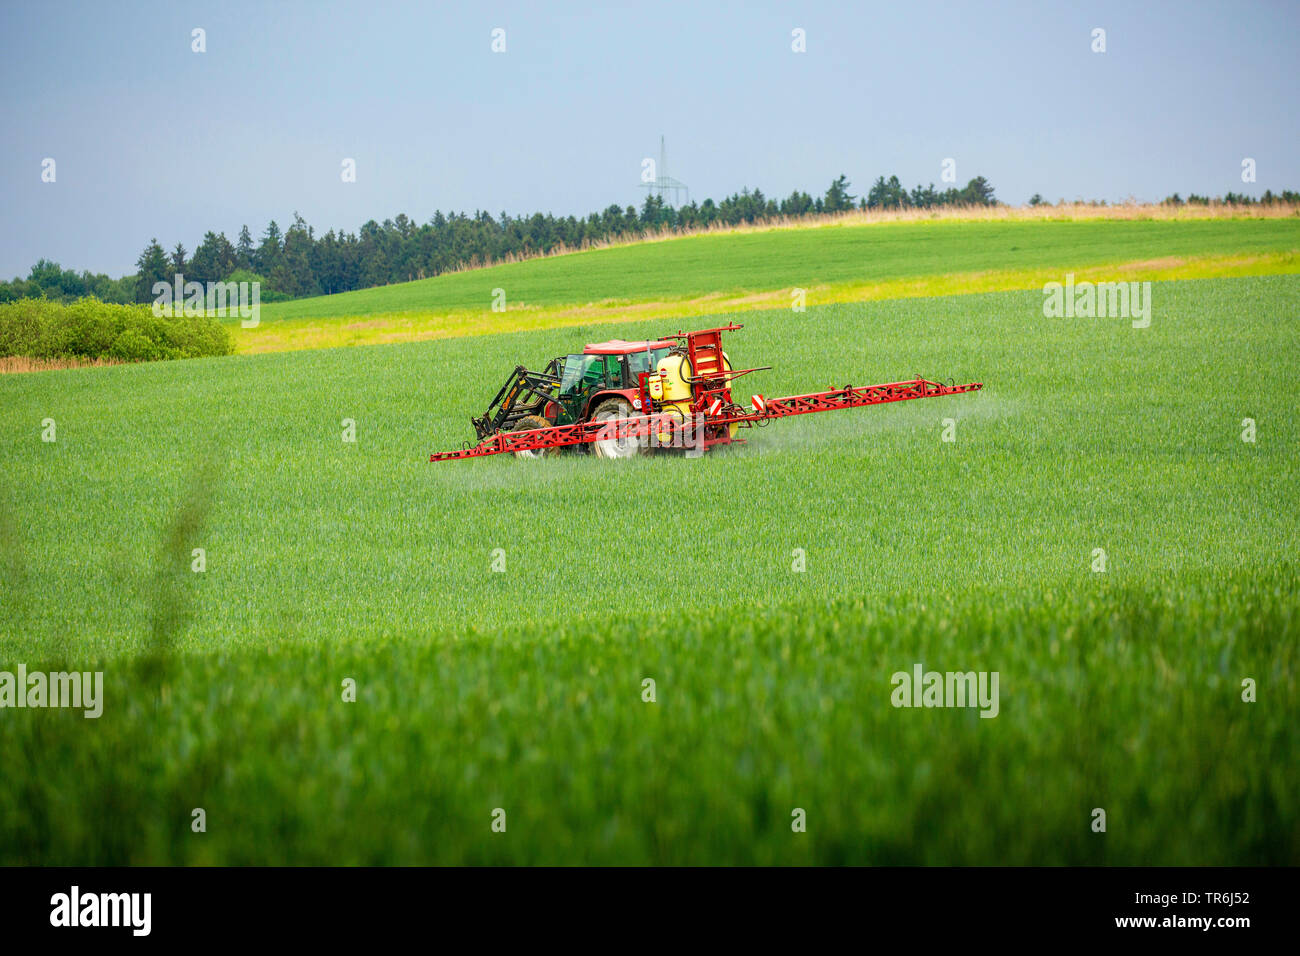 Pan de trigo, trigo cultivado (Triticum aestivum), tractor de aplicar pesticidas en un campo de trigo, Alemania, Baviera Foto de stock